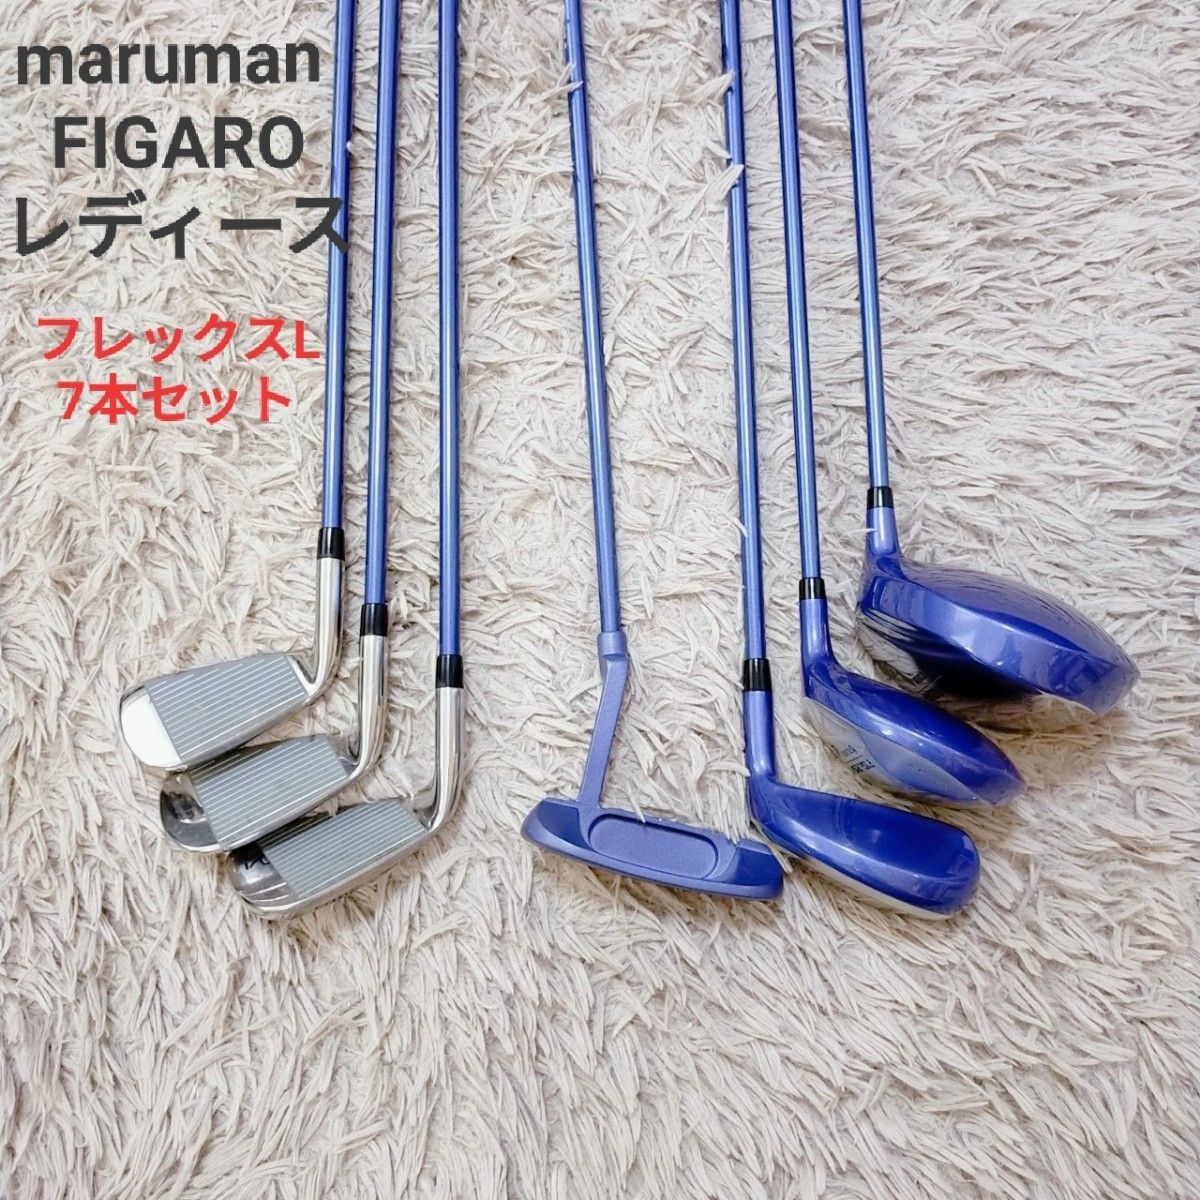 専門店では maruman FIGARO レディース 女性 ゴルフ セット セット